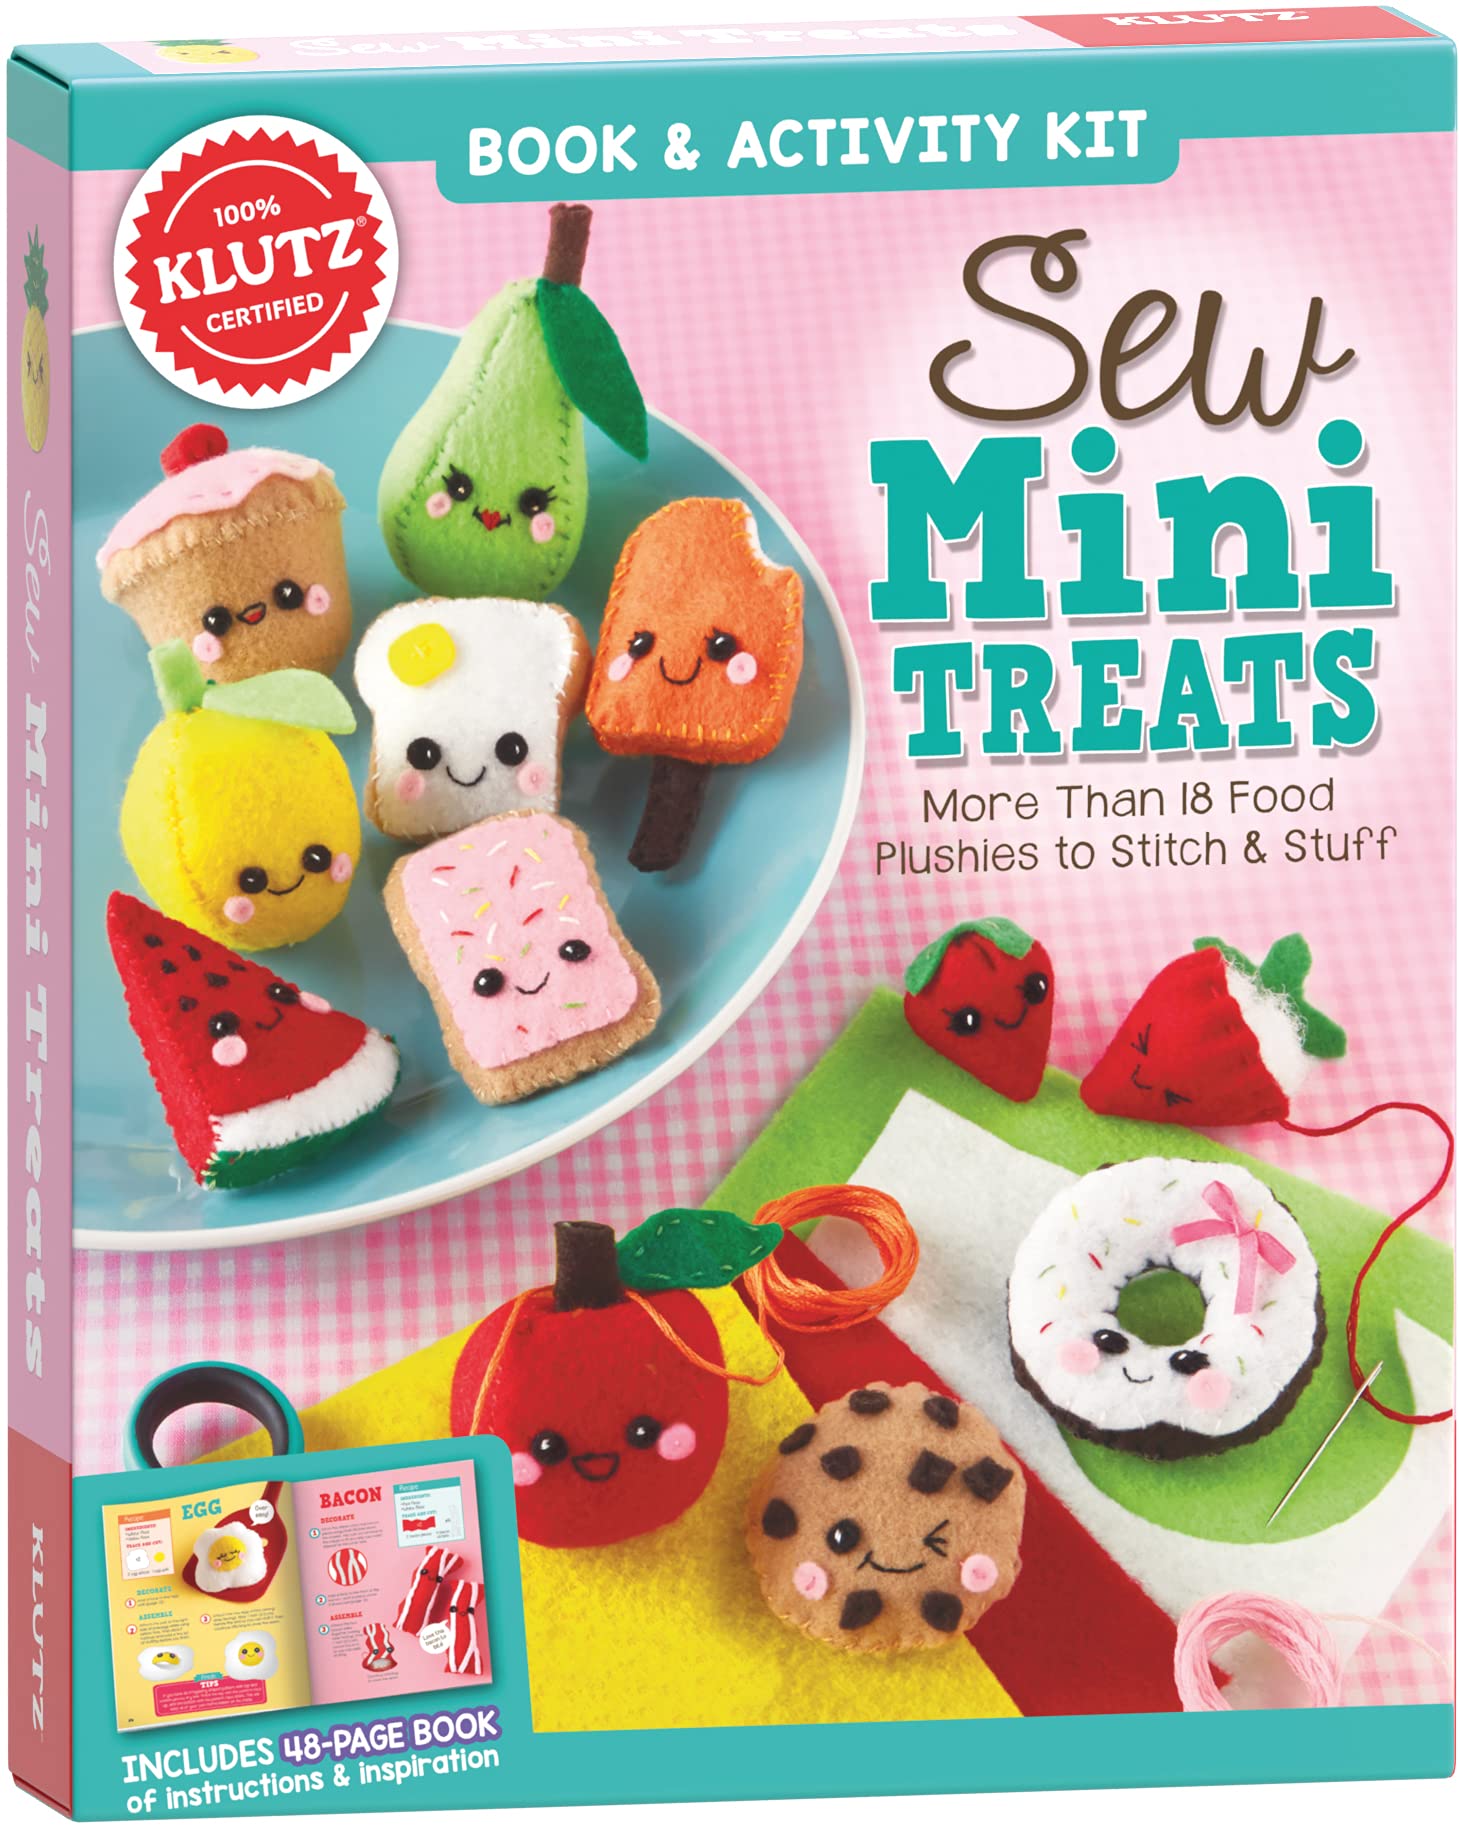 Klutz Sew Mini Treats Craft Kit, 8